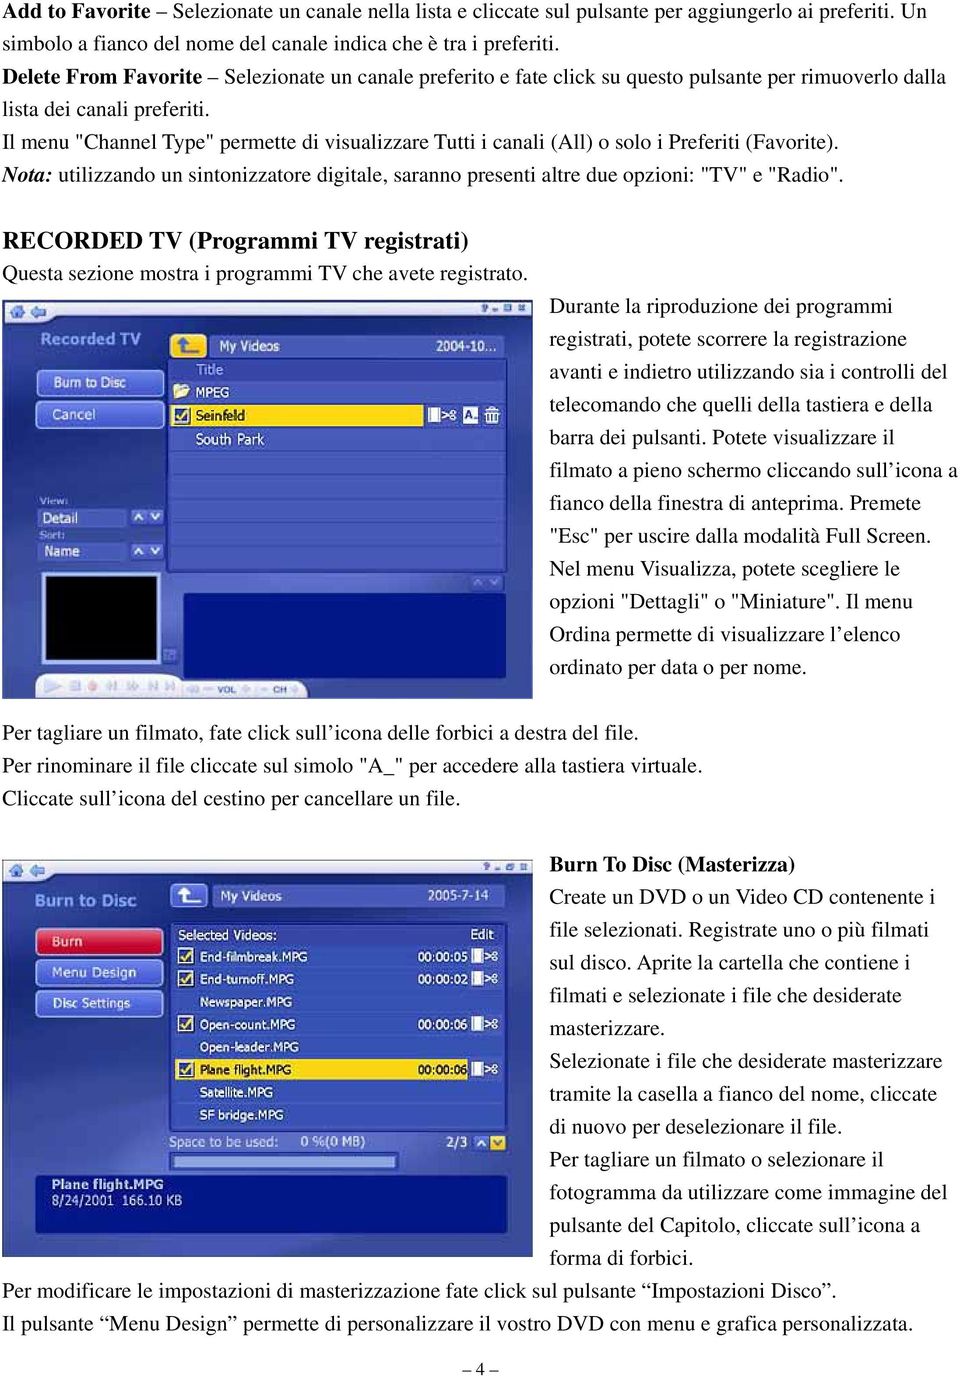 Il menu "Channel Type" permette di visualizzare Tutti i canali (All) o solo i Preferiti (Favorite). Nota: utilizzando un sintonizzatore digitale, saranno presenti altre due opzioni: "TV" e "Radio".